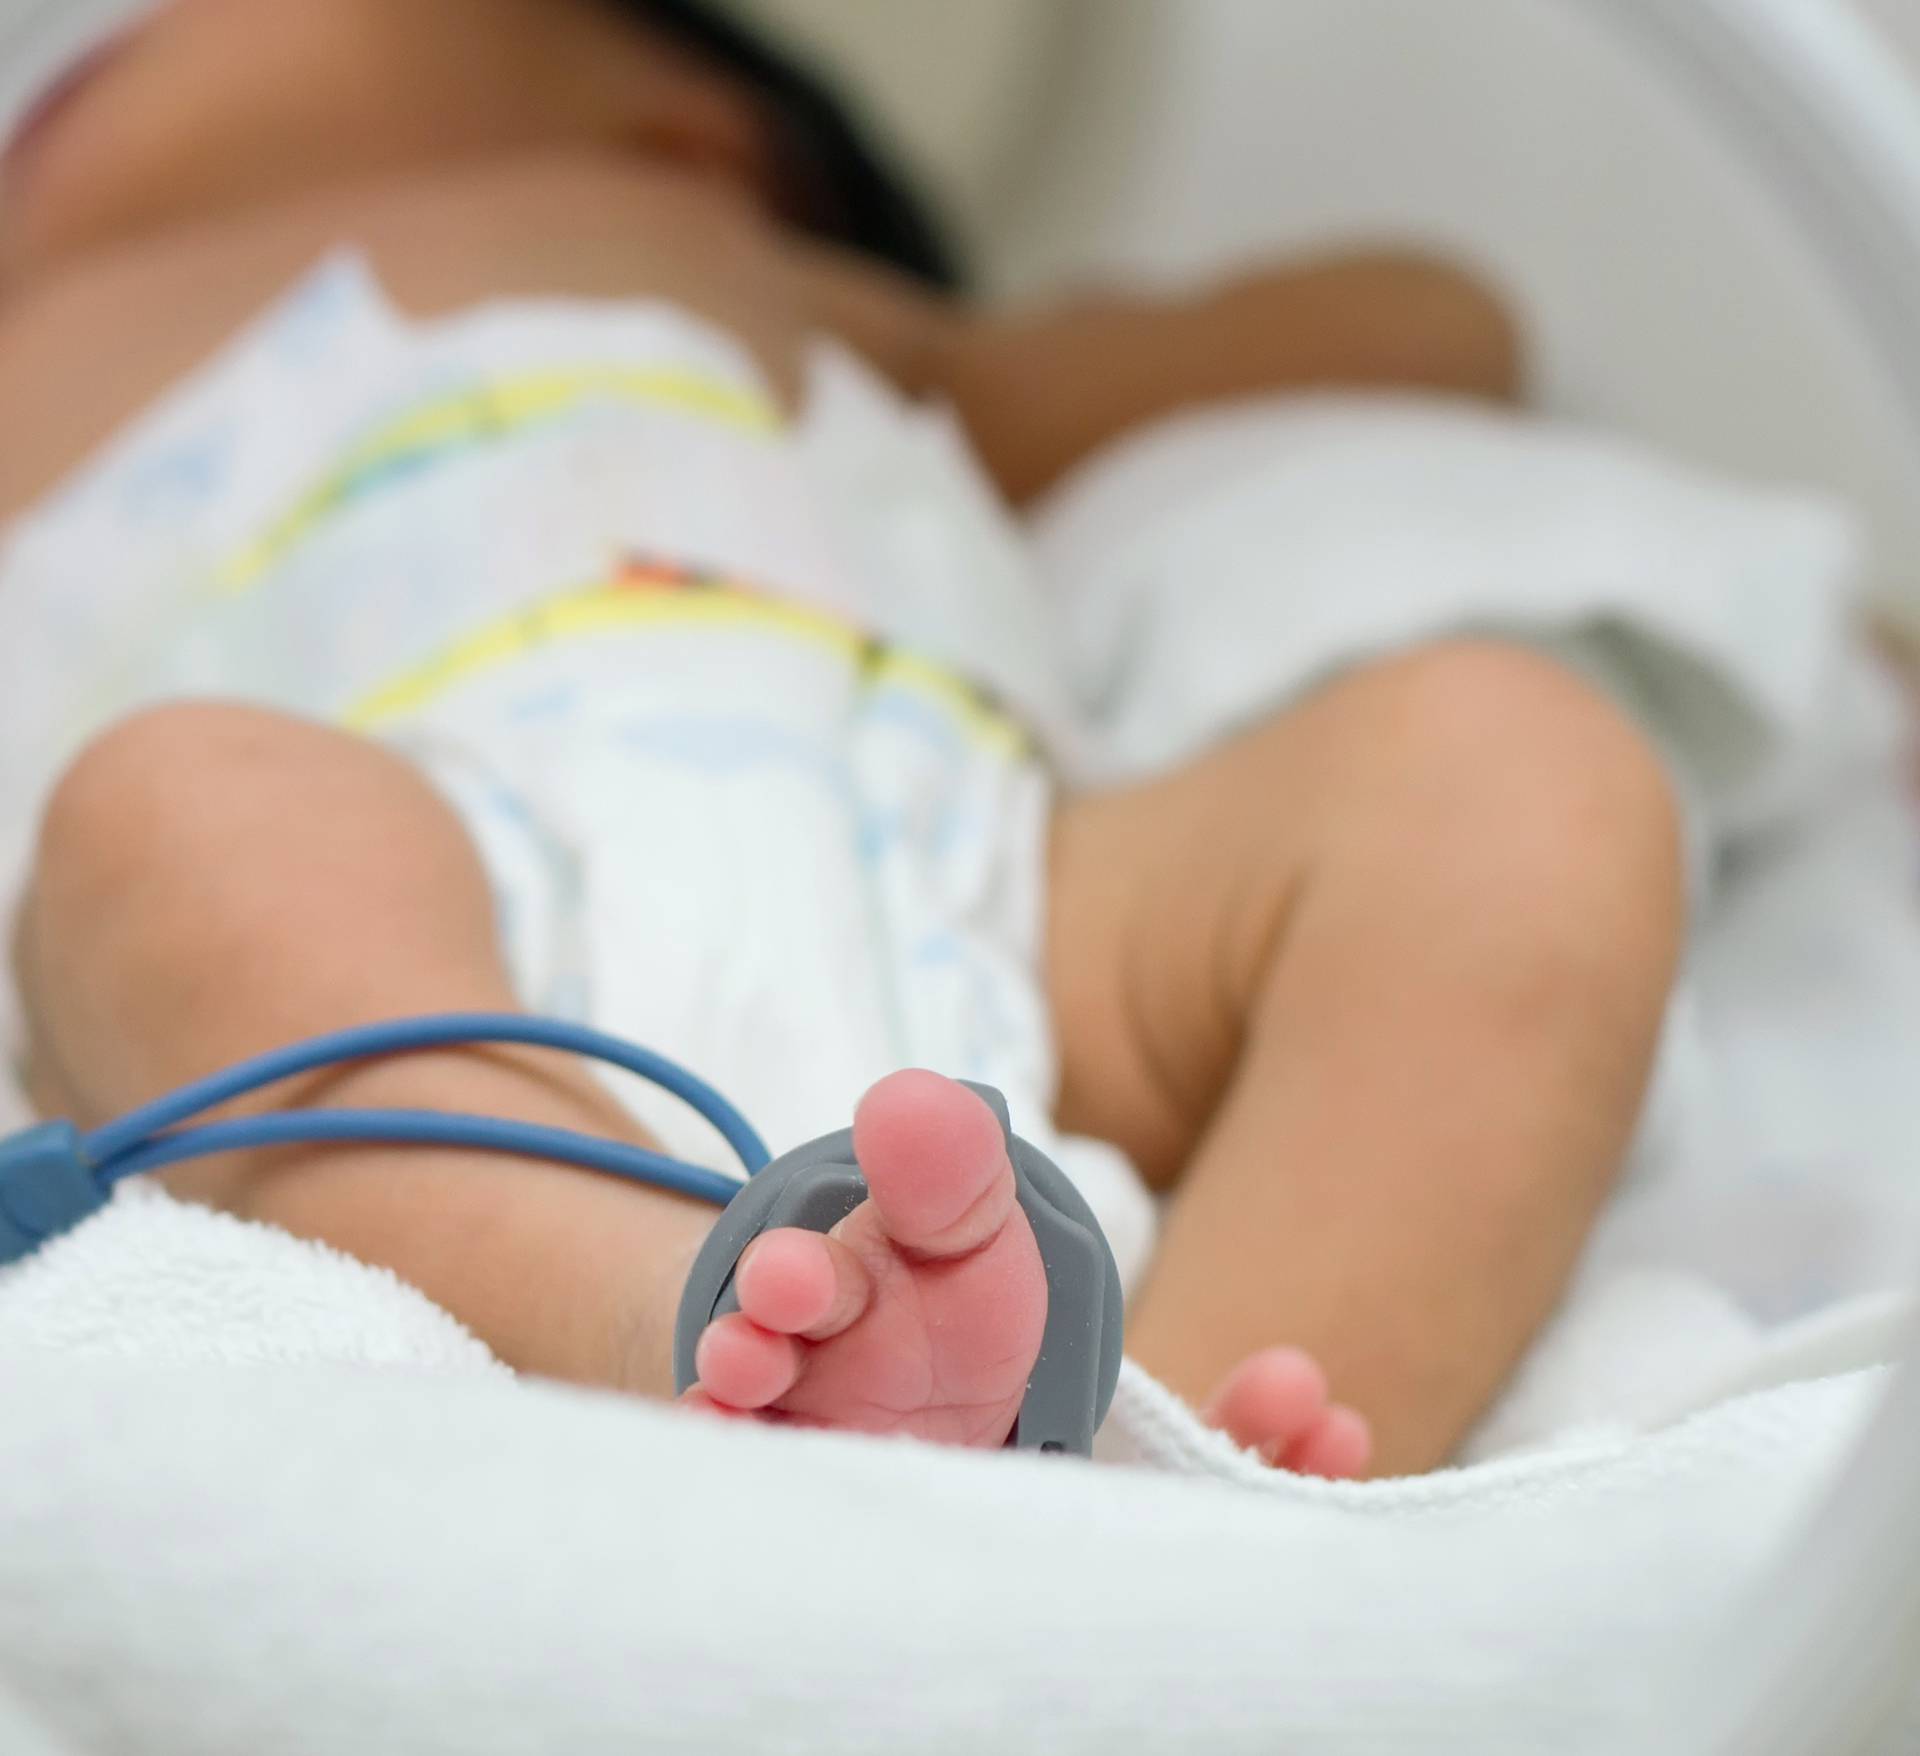 Premature newborn  baby girl